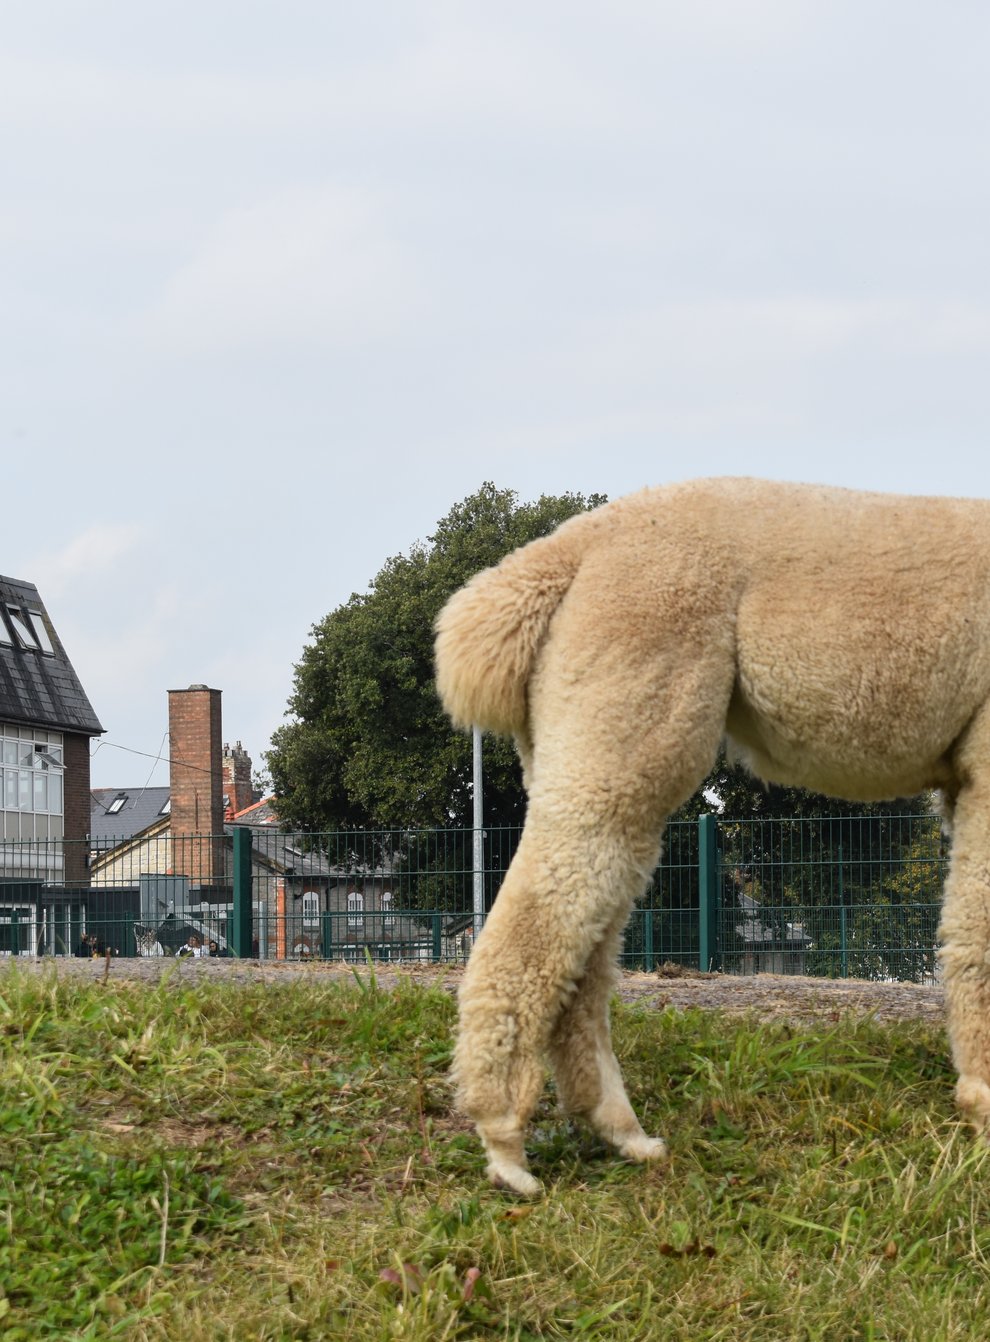 Alpacas brought to school in Wales